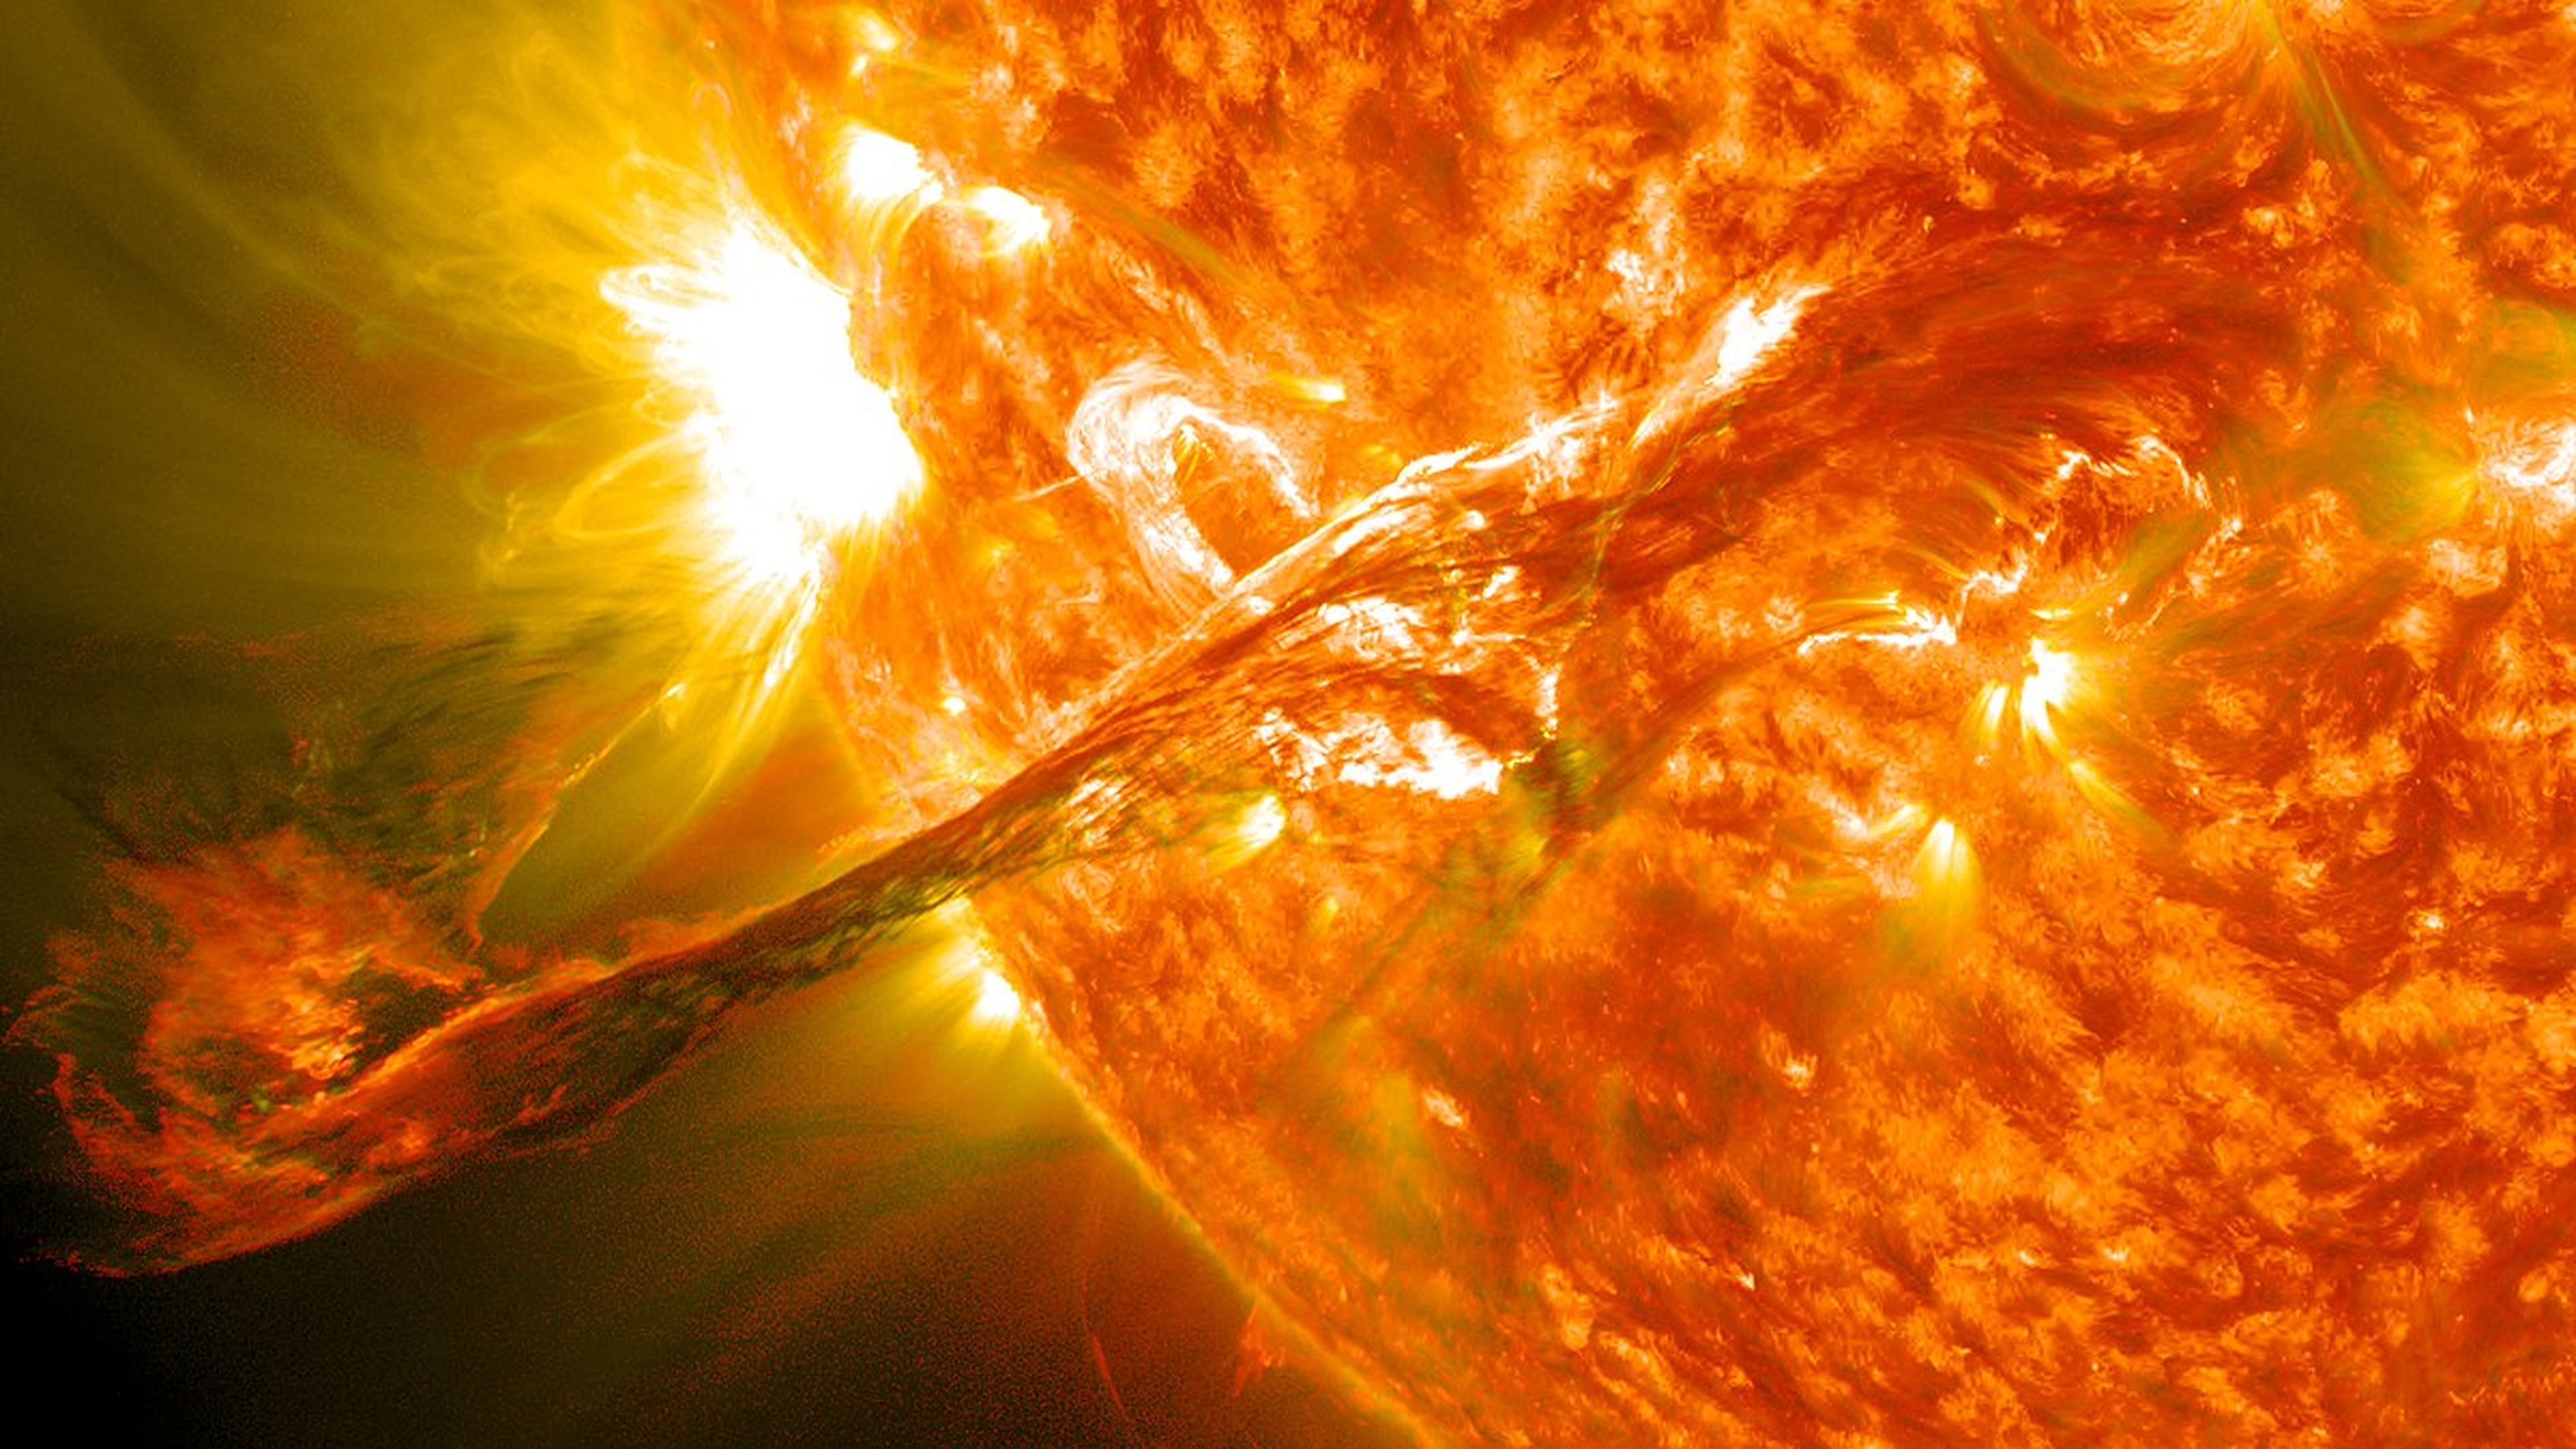 Filamento solar fotografiado el 31 de agosto de 2012 (NASA).